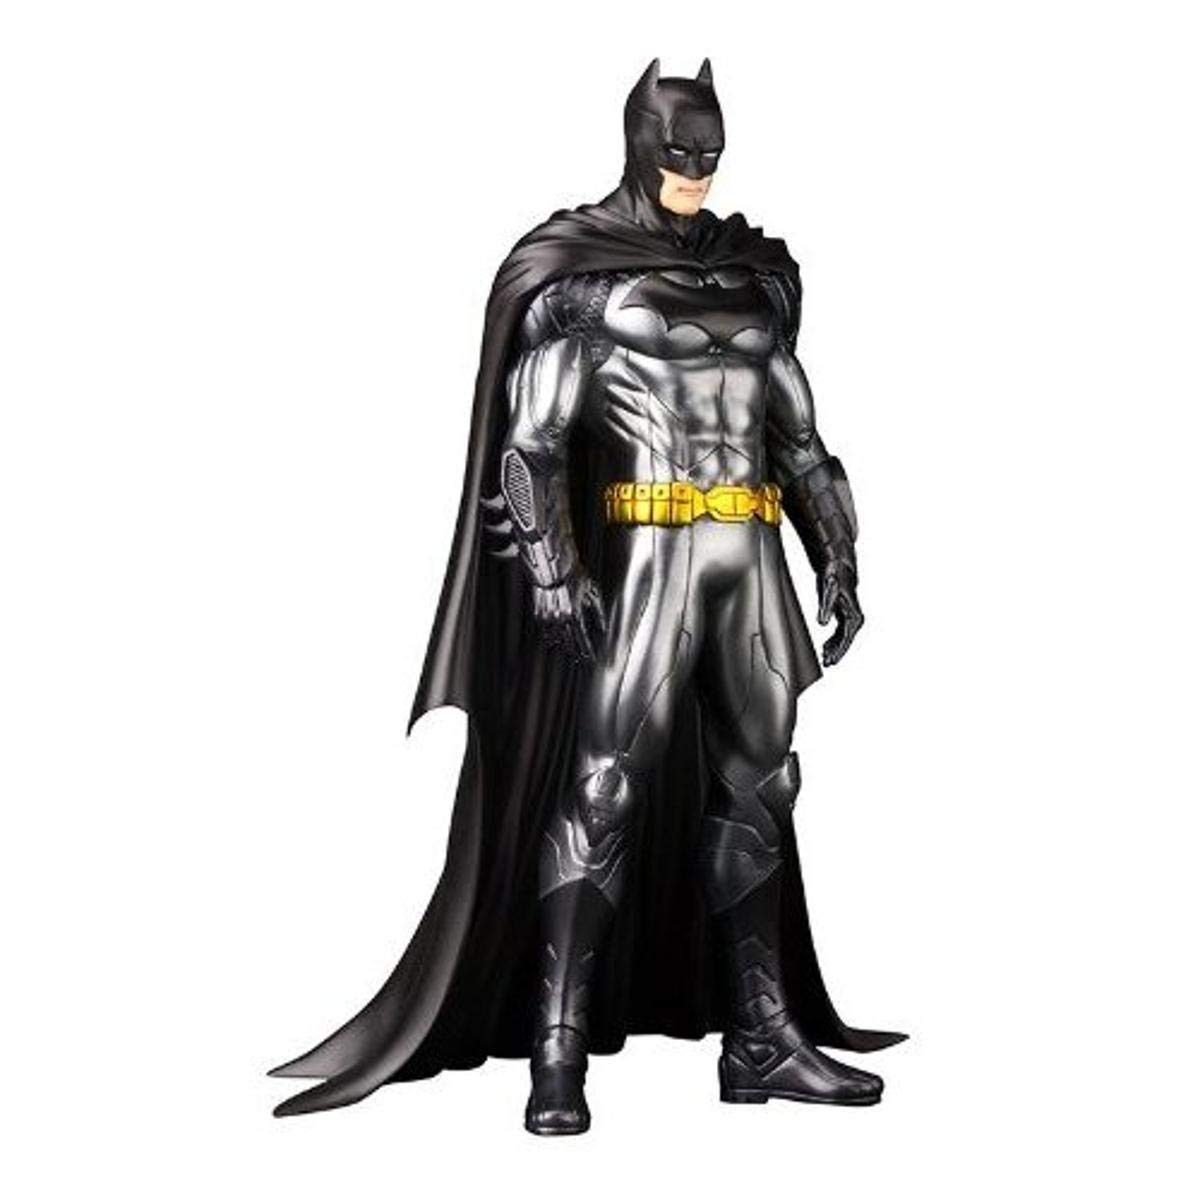 Kotobukiya DC Comics Justice League Batman New 52 ArtFX+ Statue